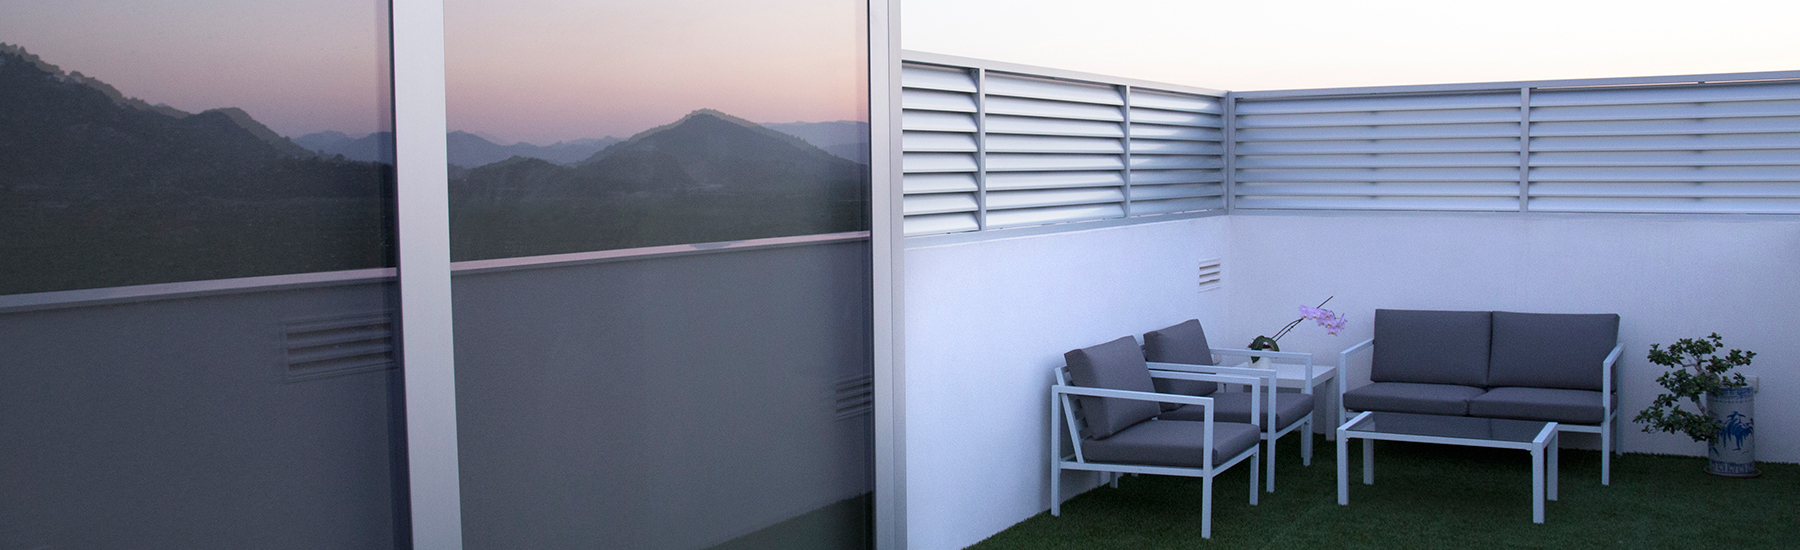 Finestral amb accés a terrassa al costat d'una gelosia fixa realitzats en alumini anonizado natural